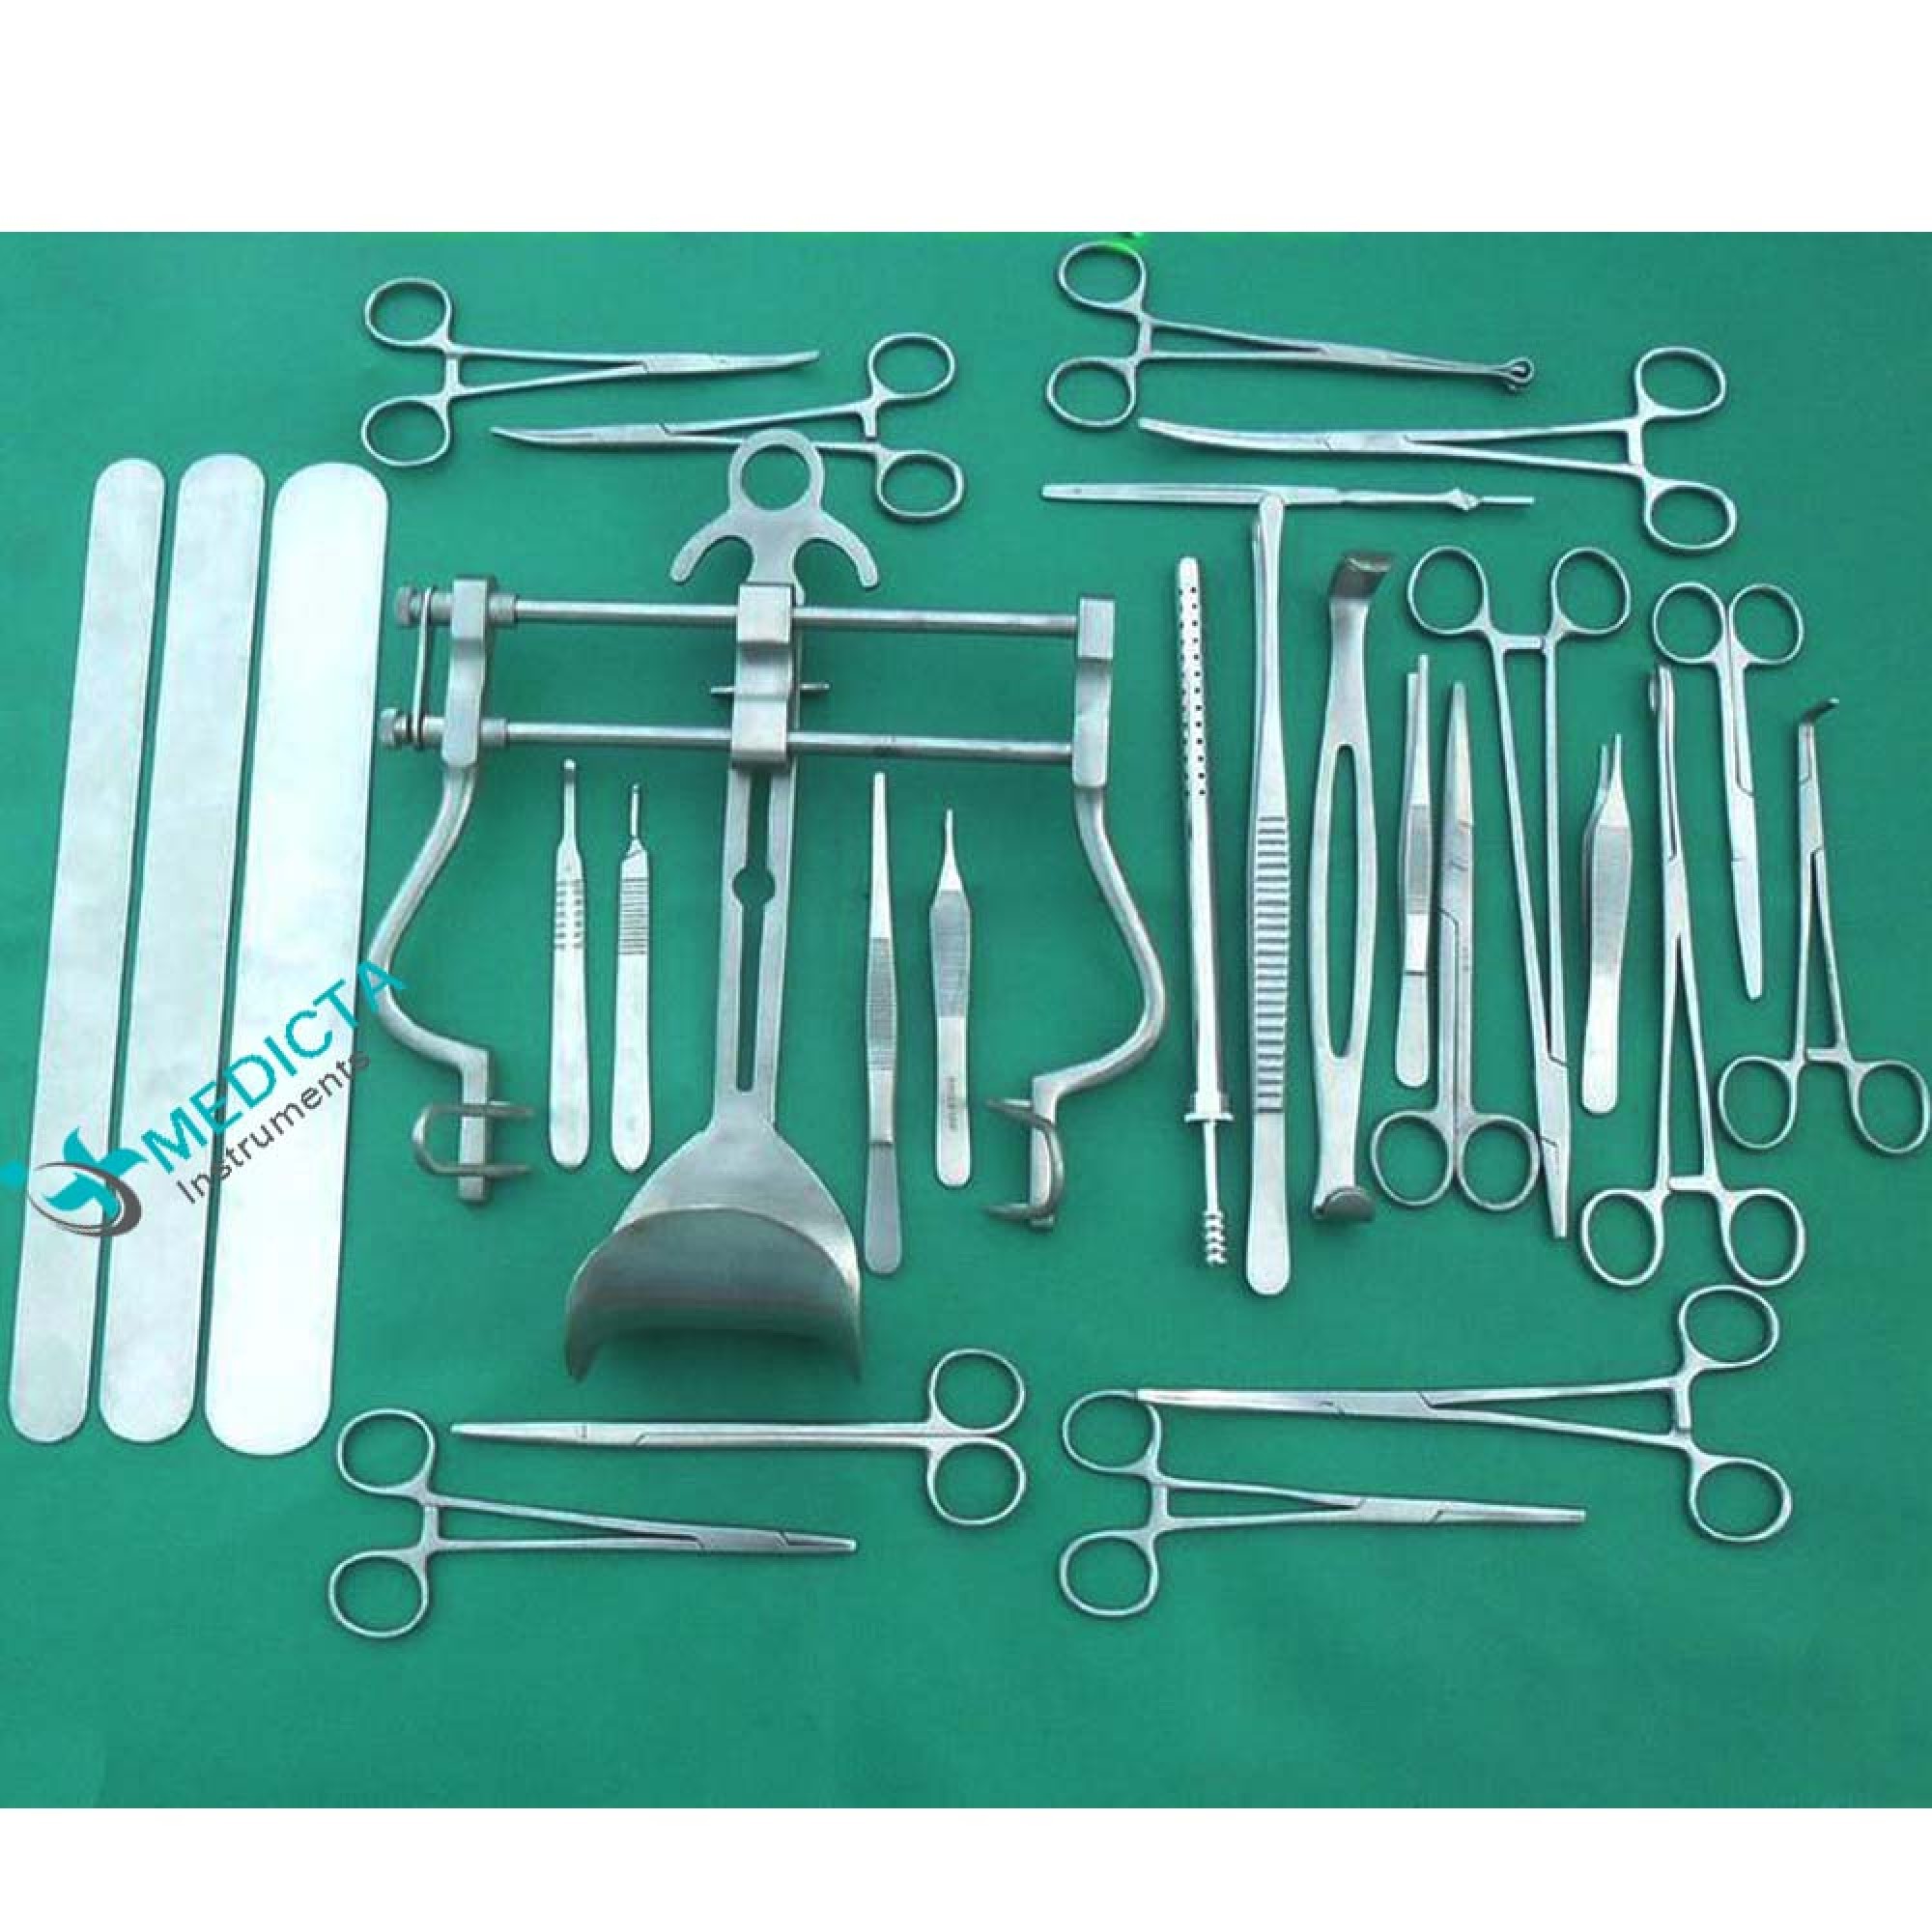 Набор для аппендэктомии. Хирургические инструменты для лапаротомии. Набор инструментов для лапаротомии хирургия. Retractor (Medical) хирургические инструменты. Хирургический набор для лапаротомии.